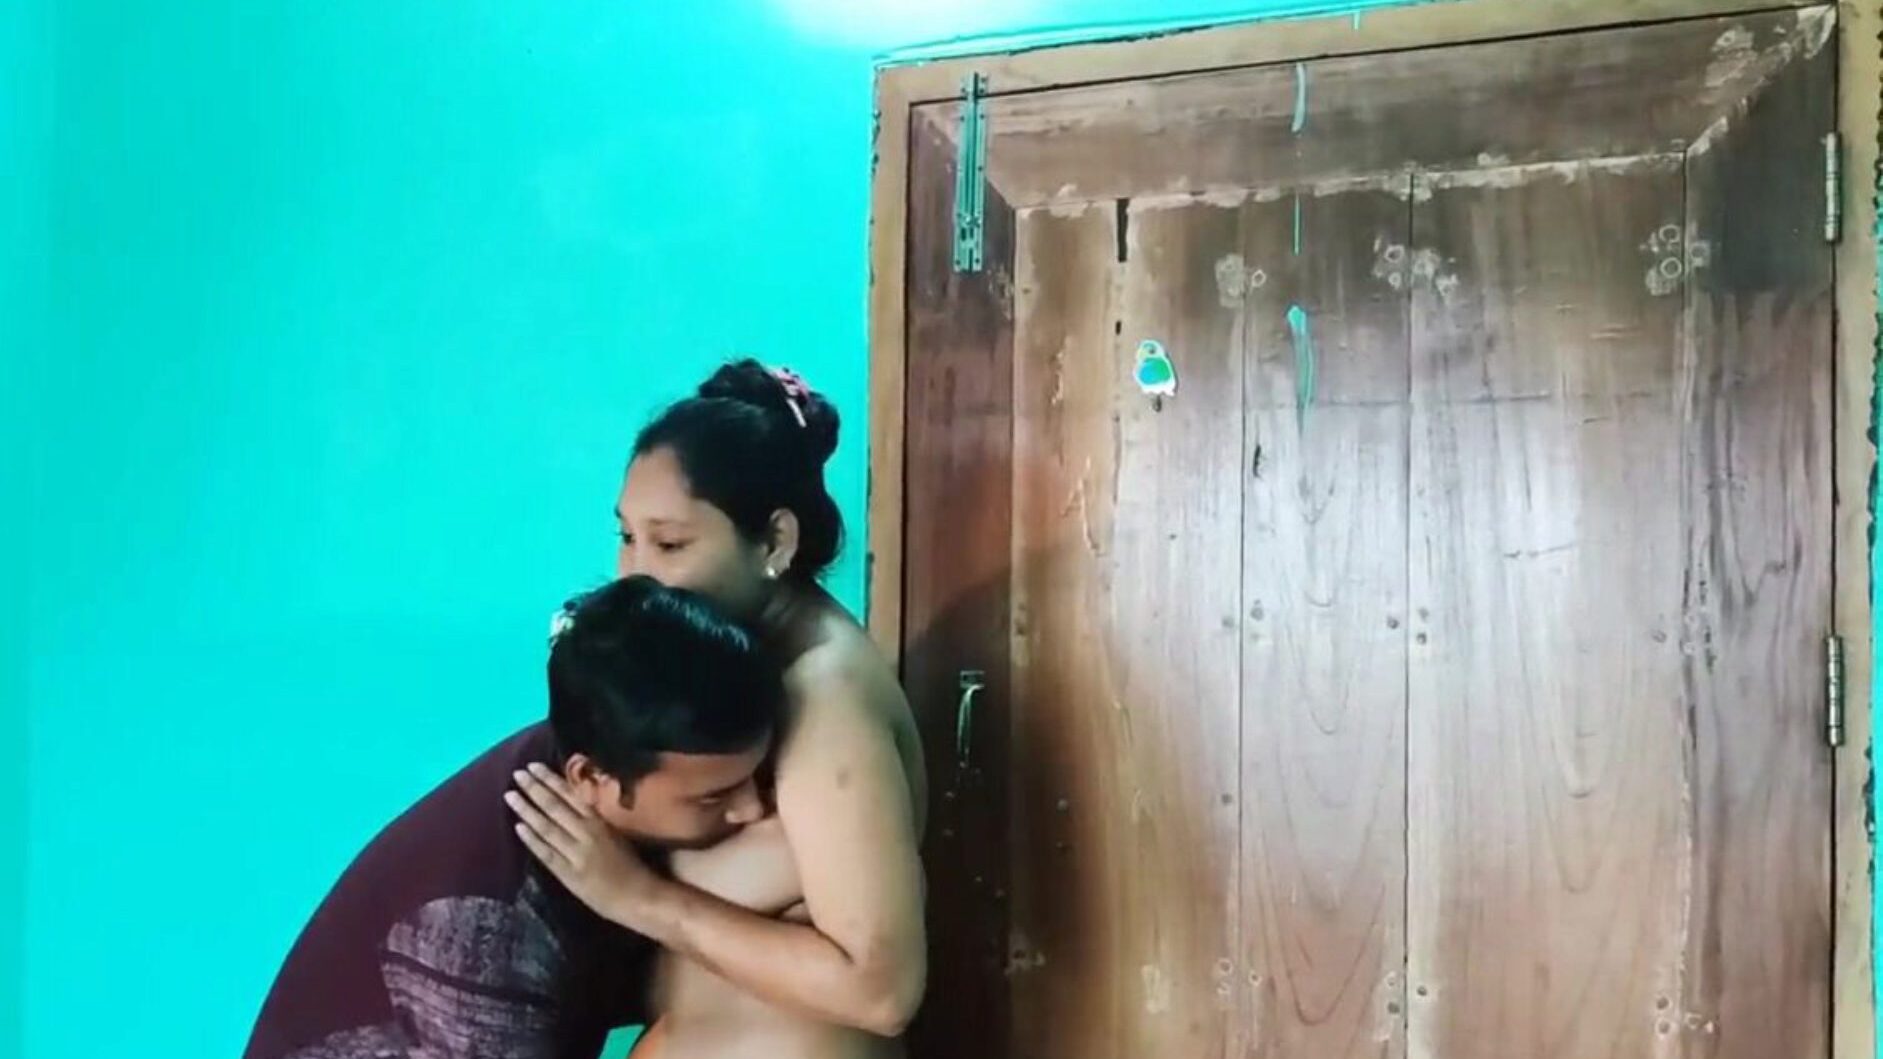 desi bengali sex video naked, free asian porn 6c: xhamster watch desi bengali sex video naked episode on xhamster, the fattest hd fuck-fest tube web resurssi, jossa on tonnia vapaasti kaikille aasialaista xxn seksiä ja anaalipornoa